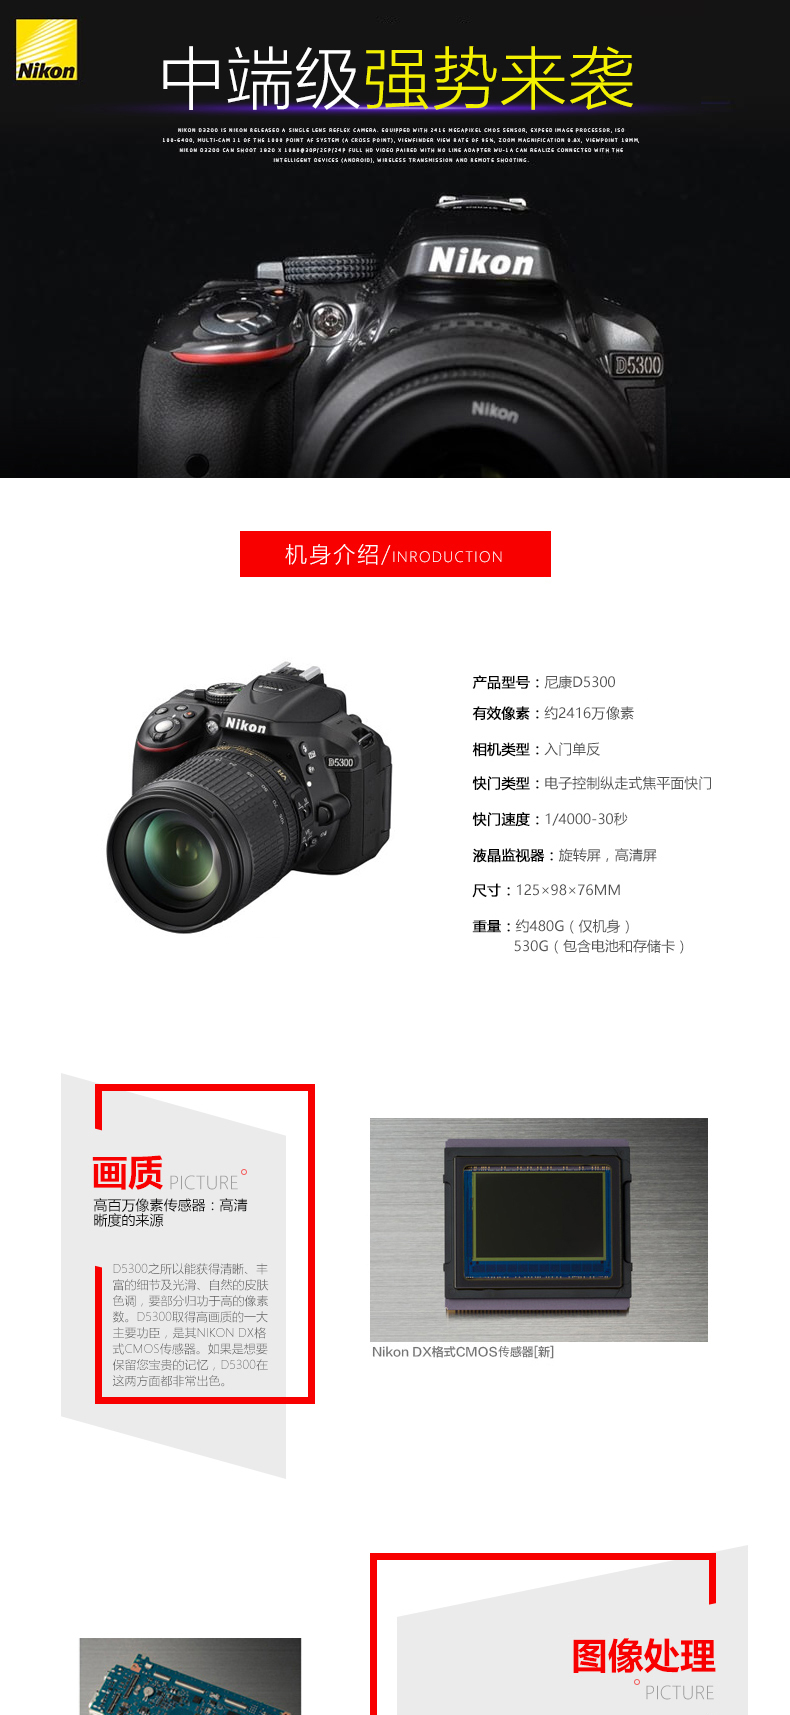 尼康(Nikon) D5300（18-55mm+55-300mm) 双镜头单反套装 2416万像素 翻转屏 WIFI